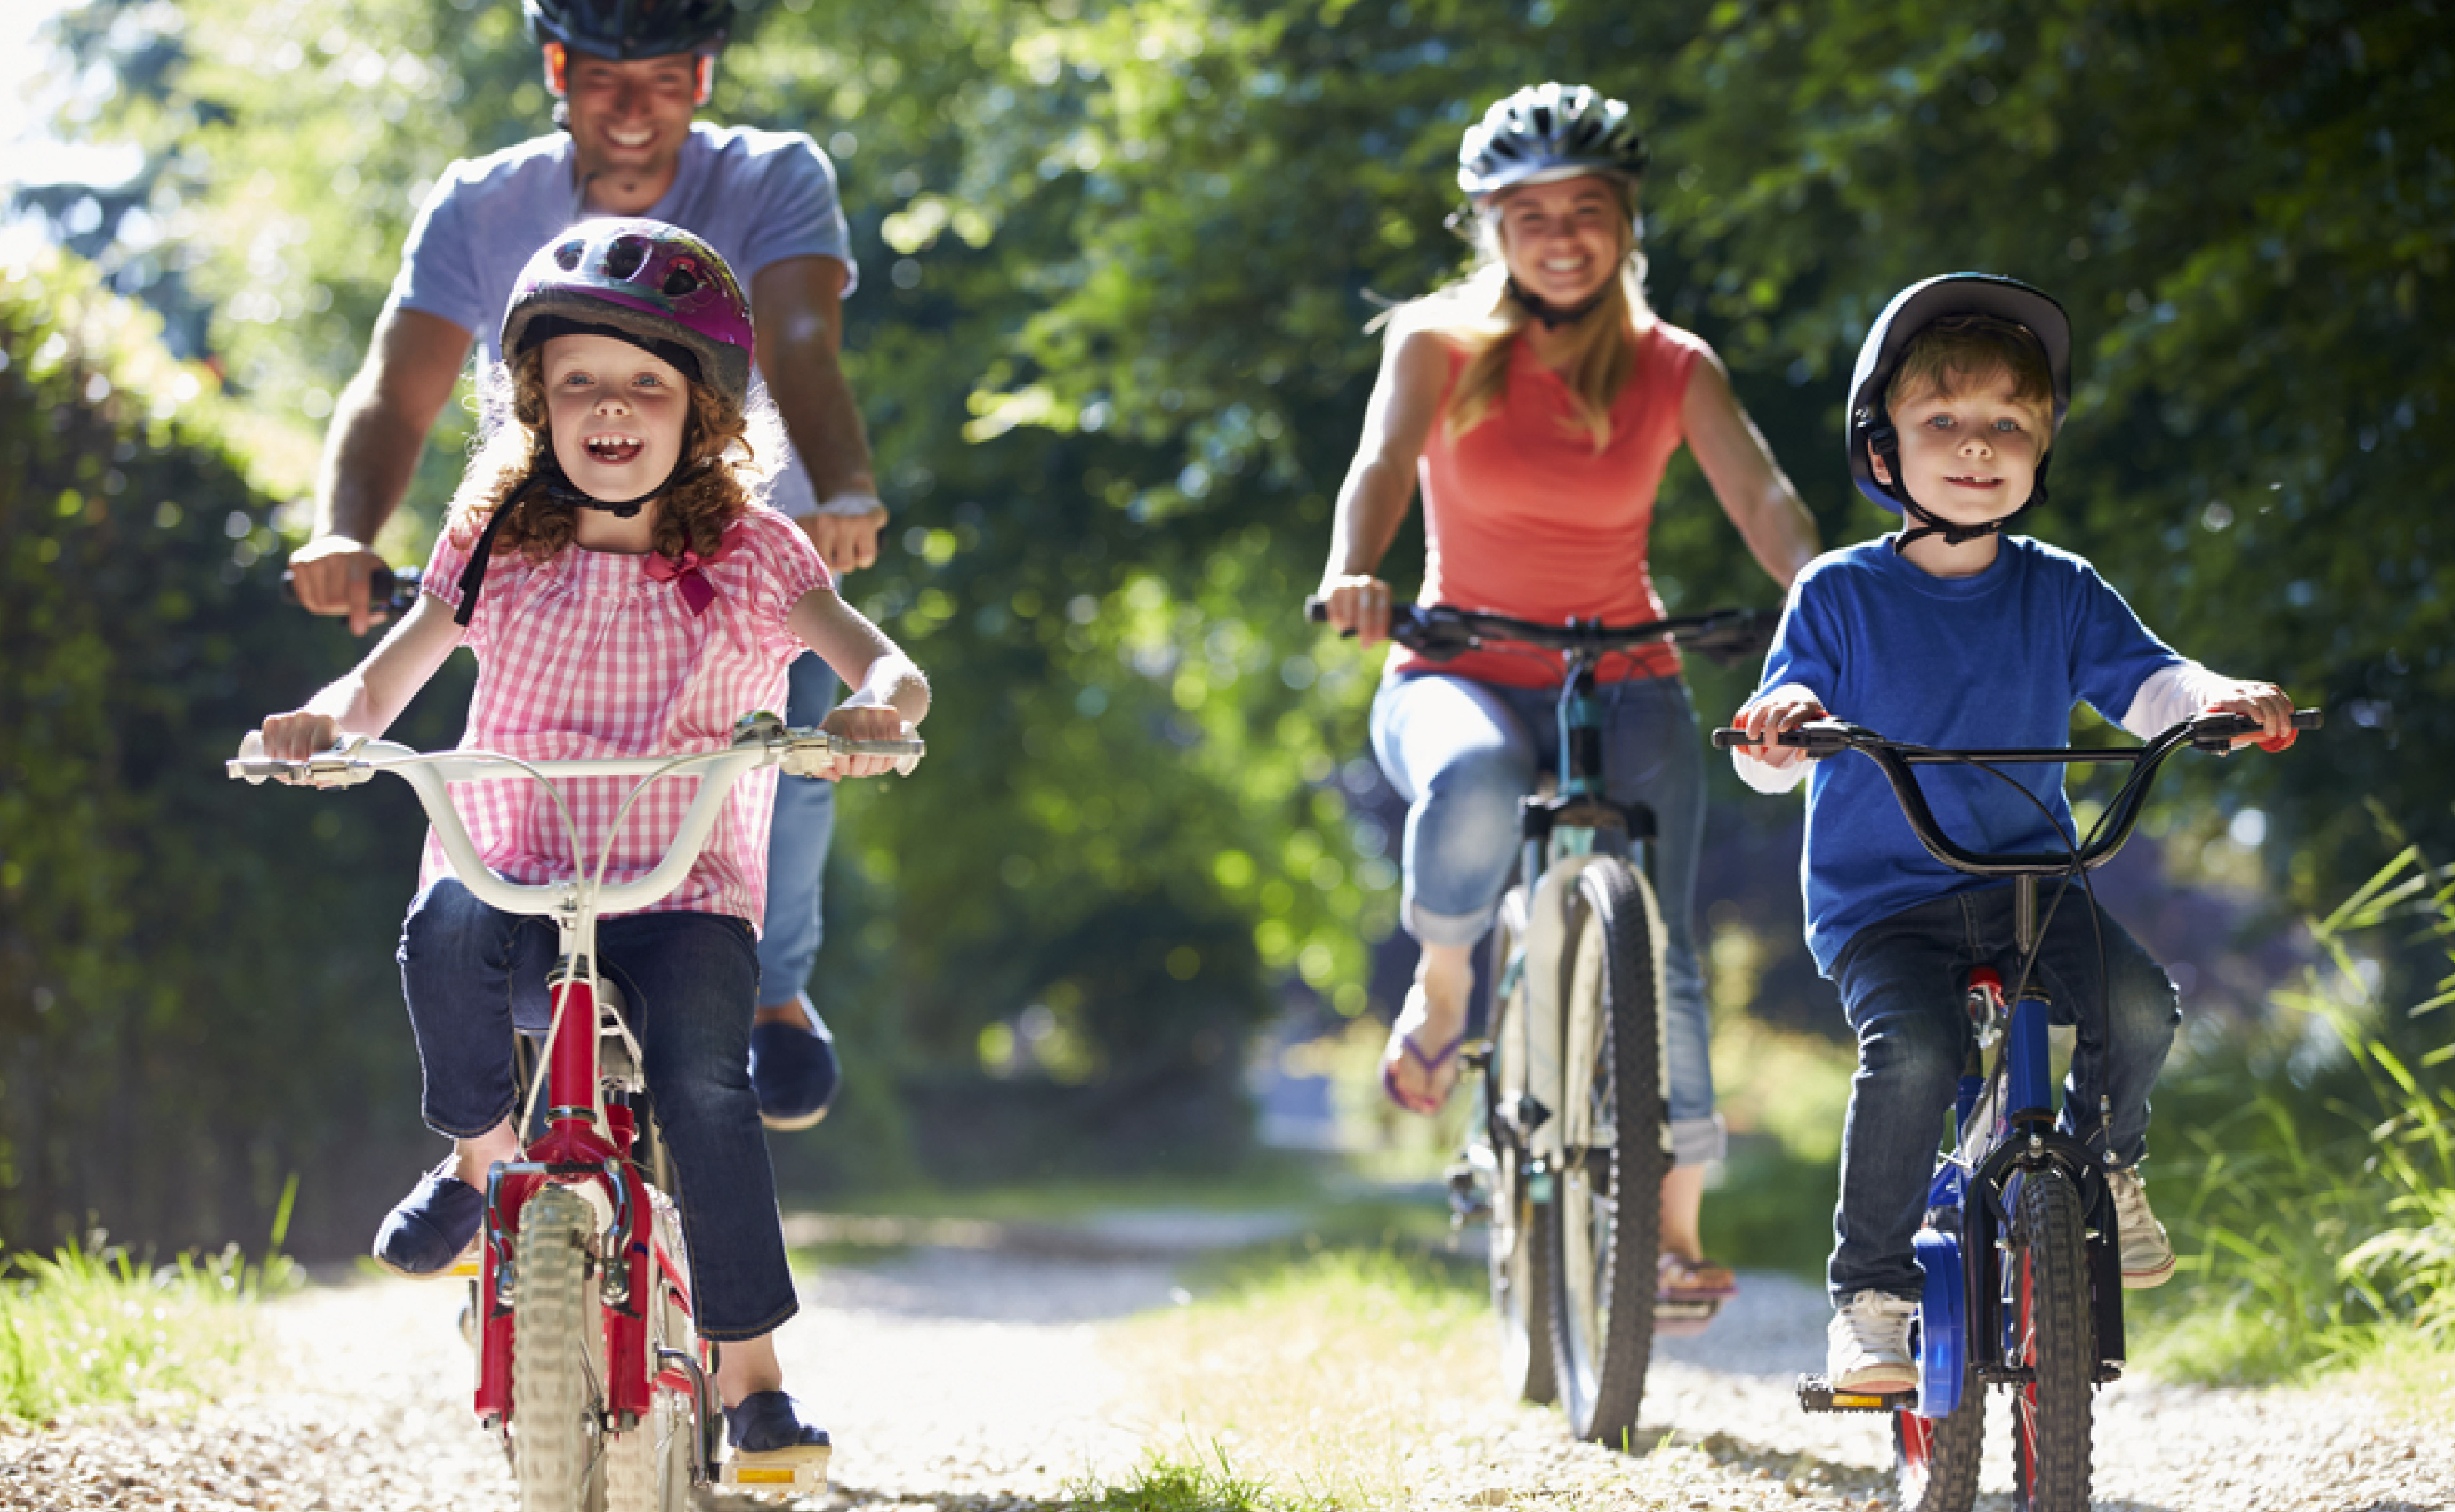 Едем маму с другом. Дети с велосипедом. Дети катаются на велосипеде. Прогулка на велосипеде. Прогулка на велосипеде дети.